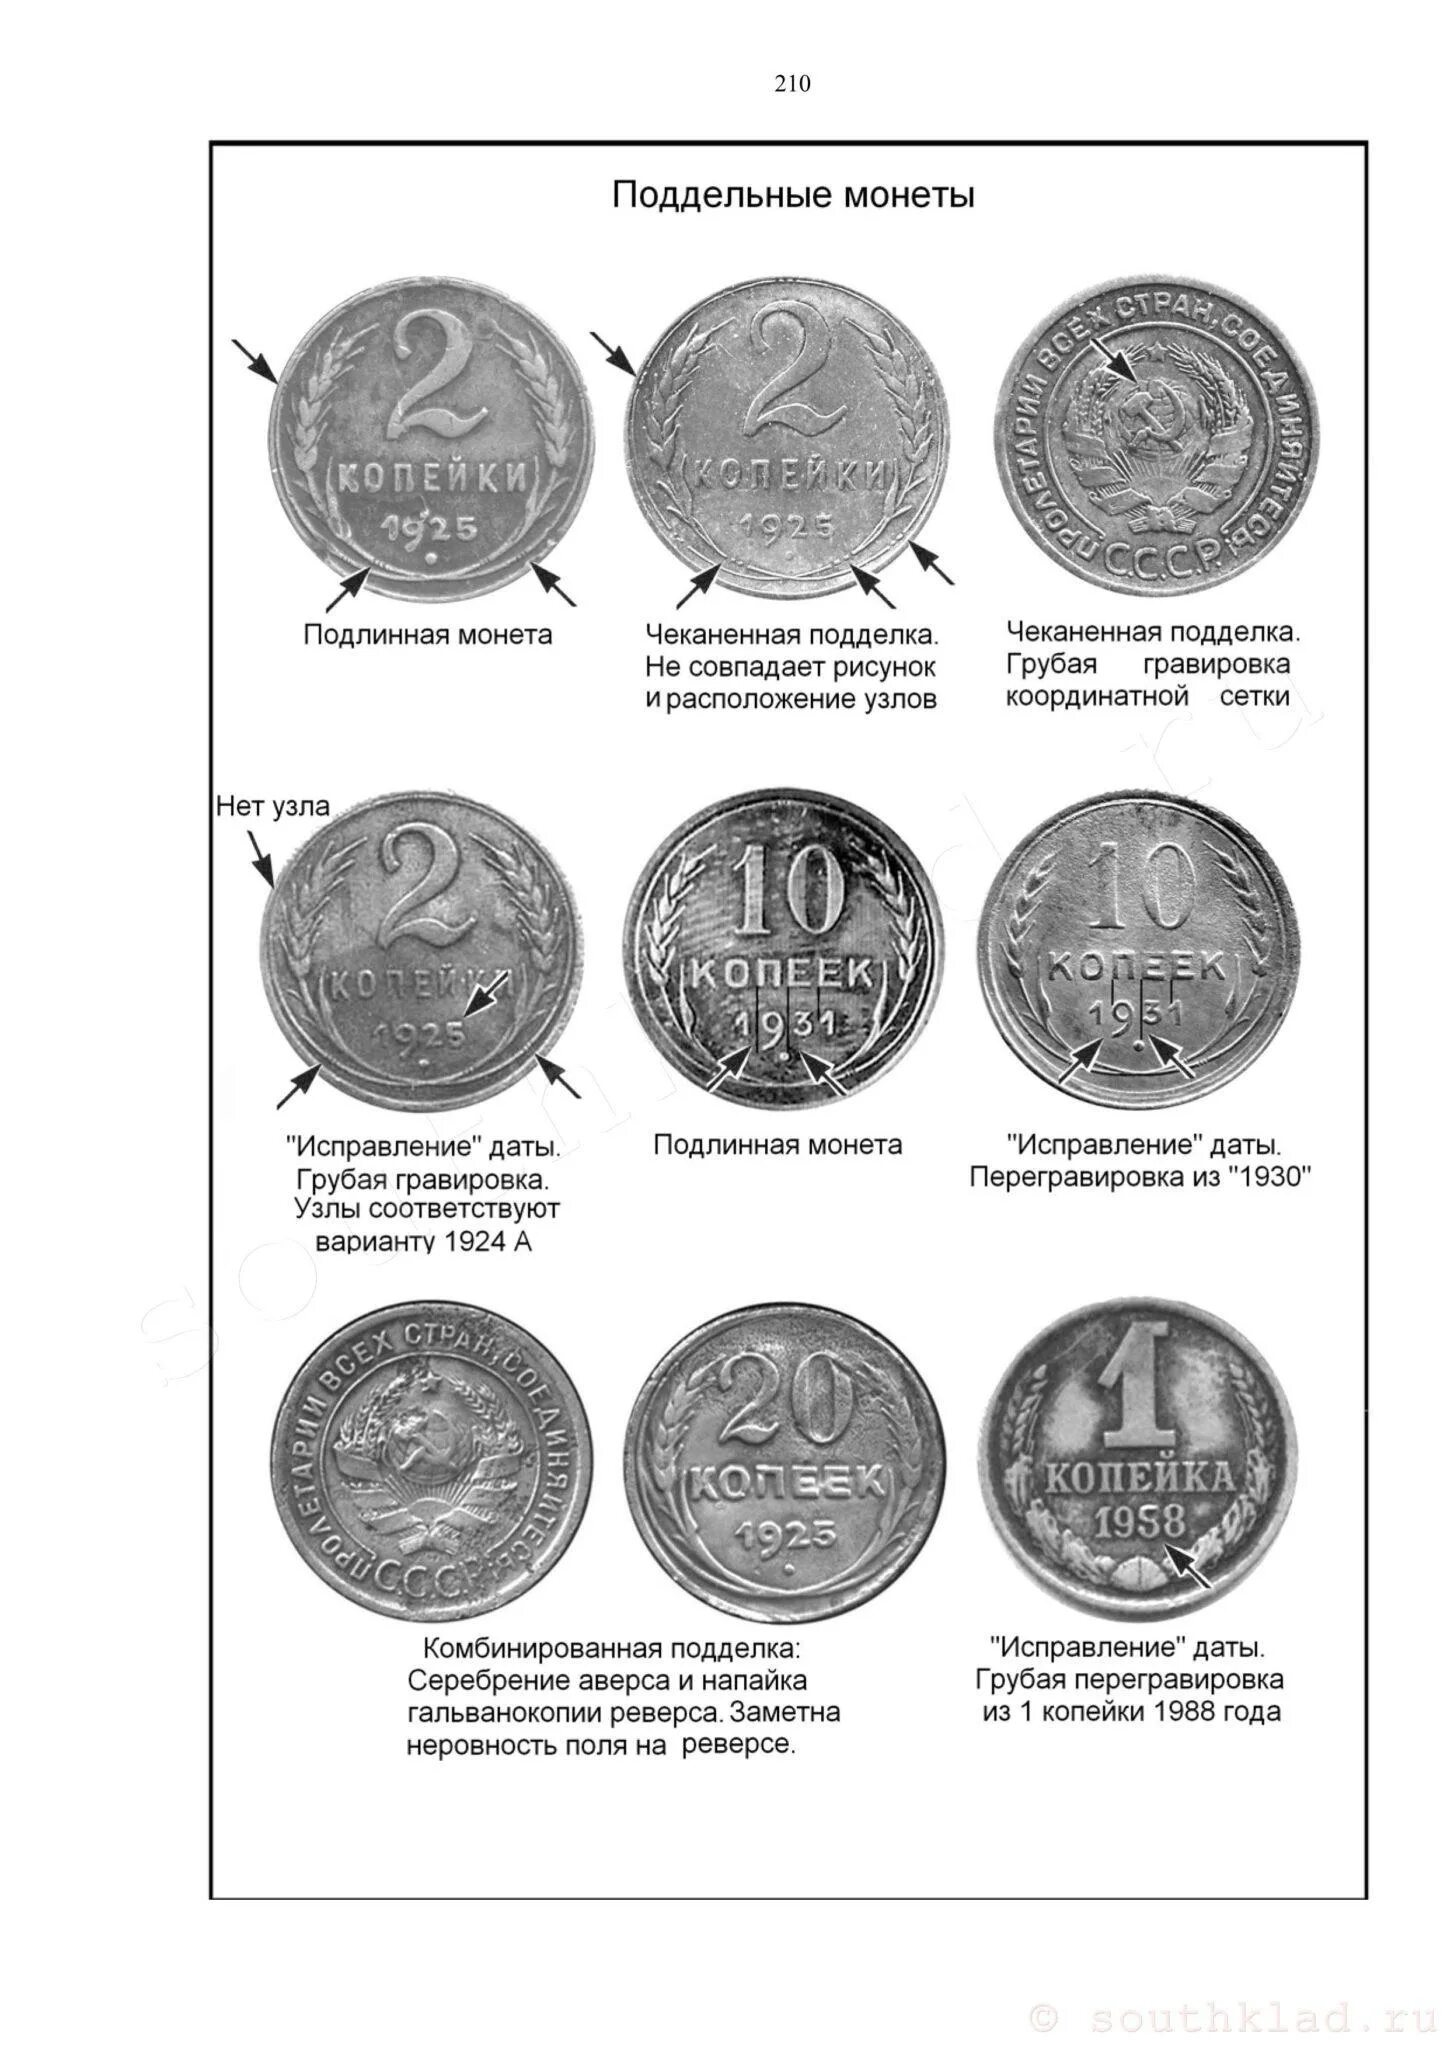 Определить год монеты. Как отличить фальшивую монету от настоящей.